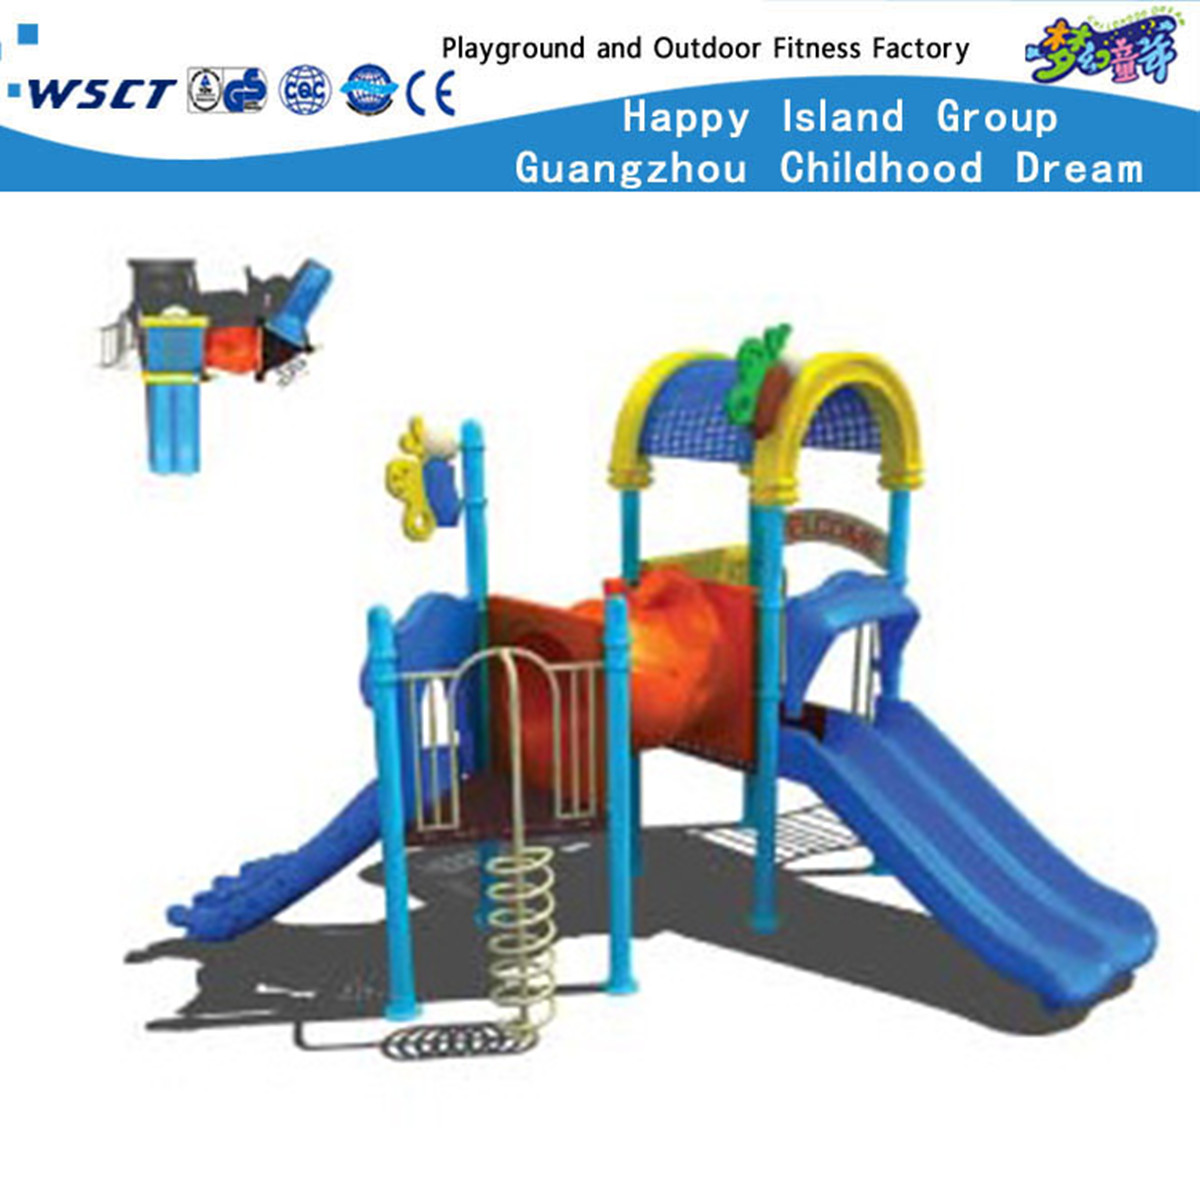 大型室外色彩鲜艳的儿童多功能滑梯游乐设备(M11-00702)